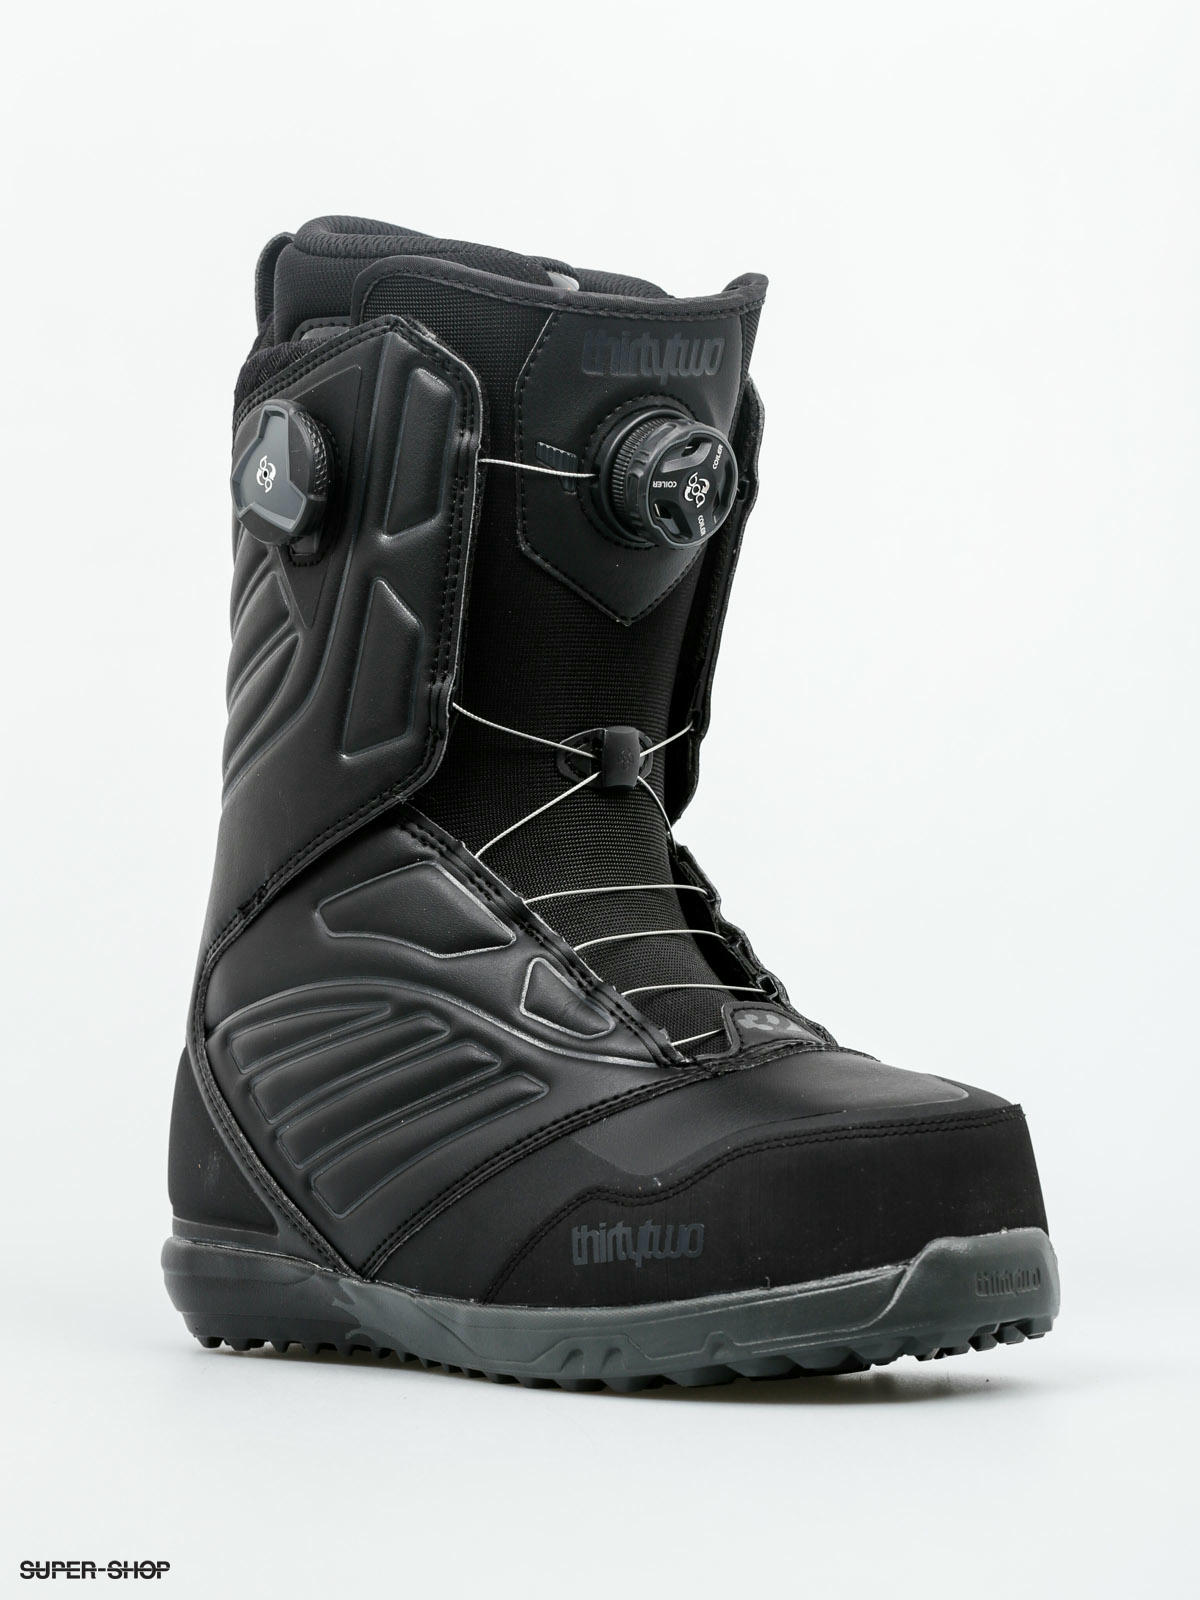 binary boa snowboard boots